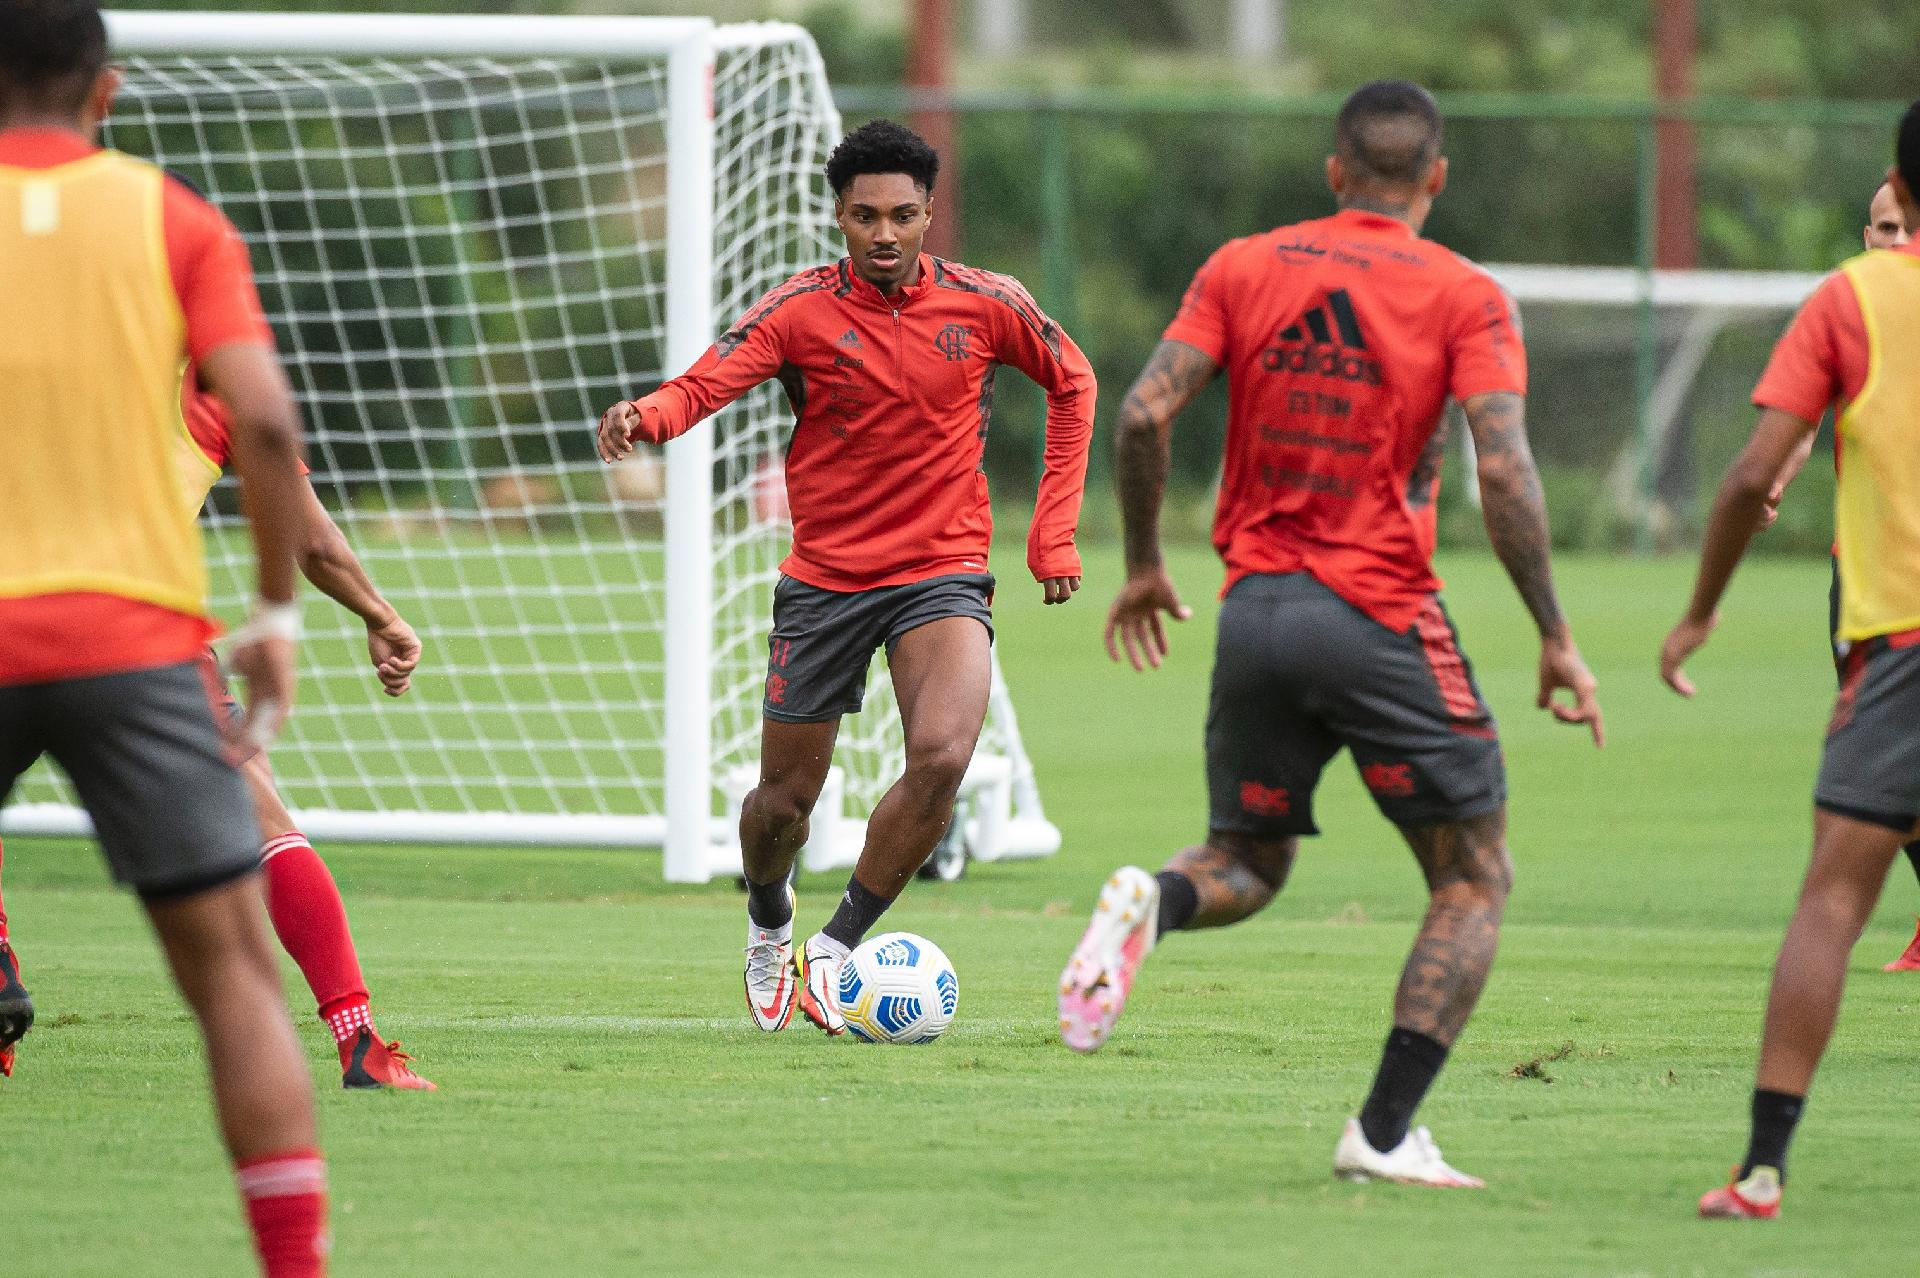 OPINIÃO: Flamengo deve jogar de forma mais cautelosa contra o Athletico-PR